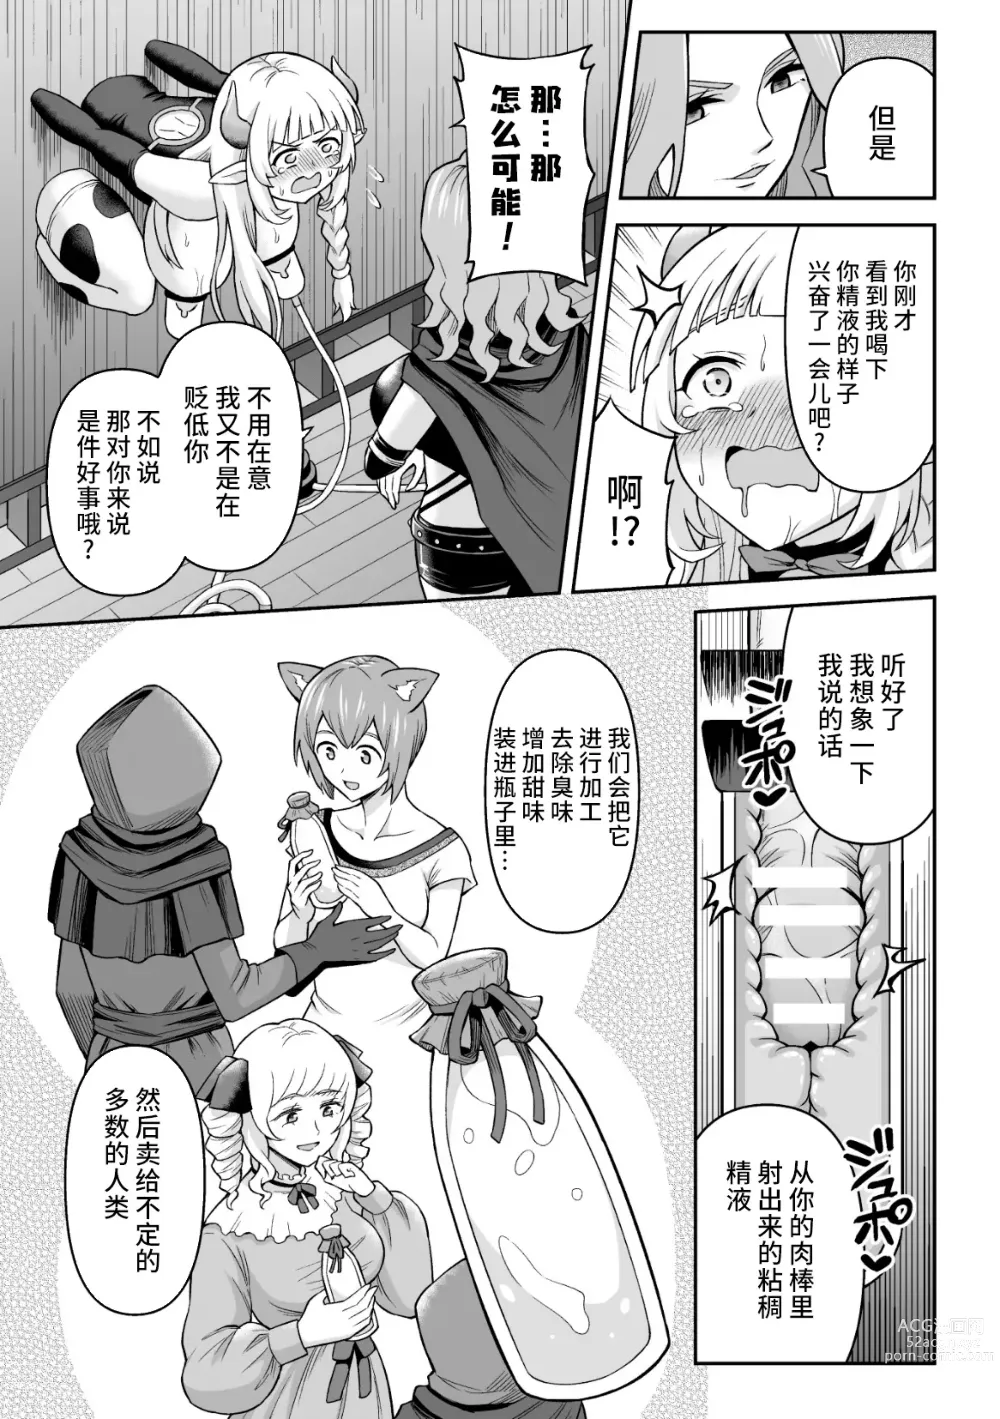 Page 19 of manga Ushi Musume no Kyousei Oschinpo Milk